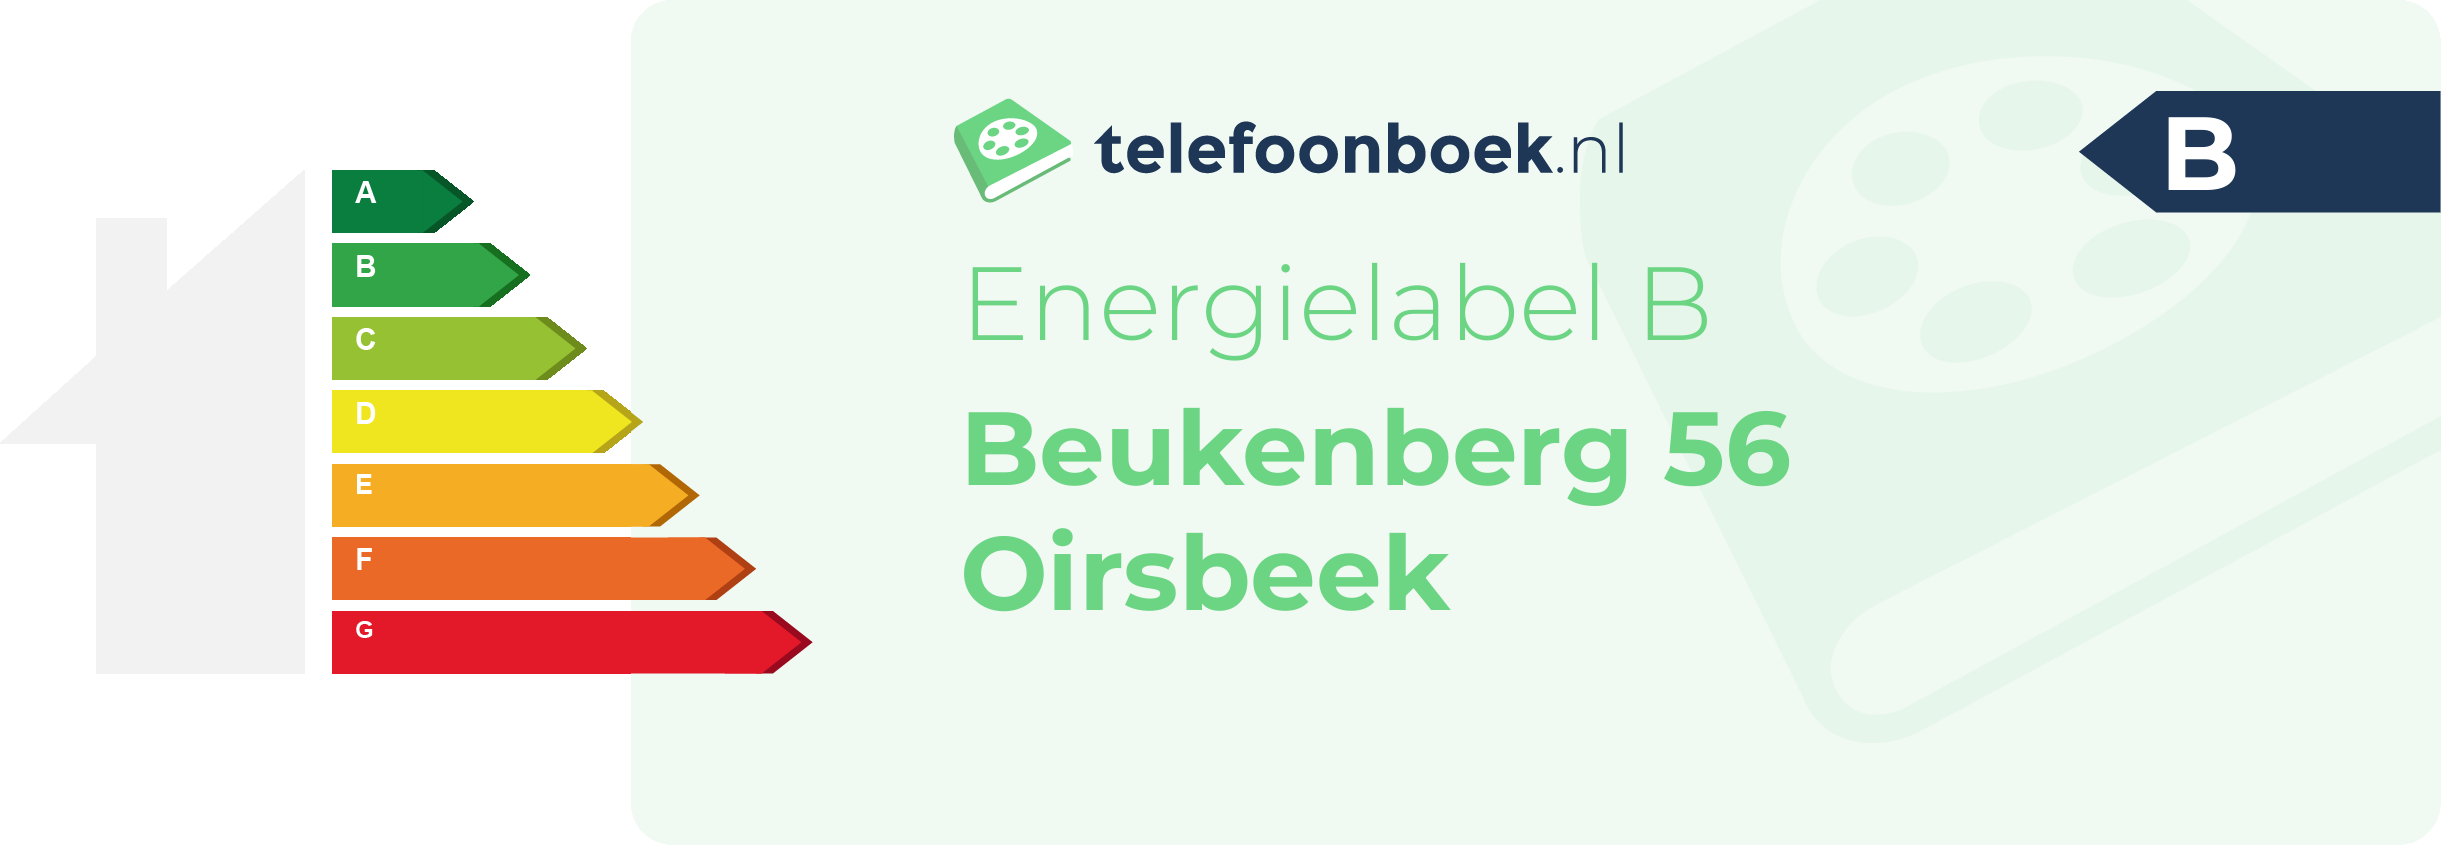 Energielabel Beukenberg 56 Oirsbeek